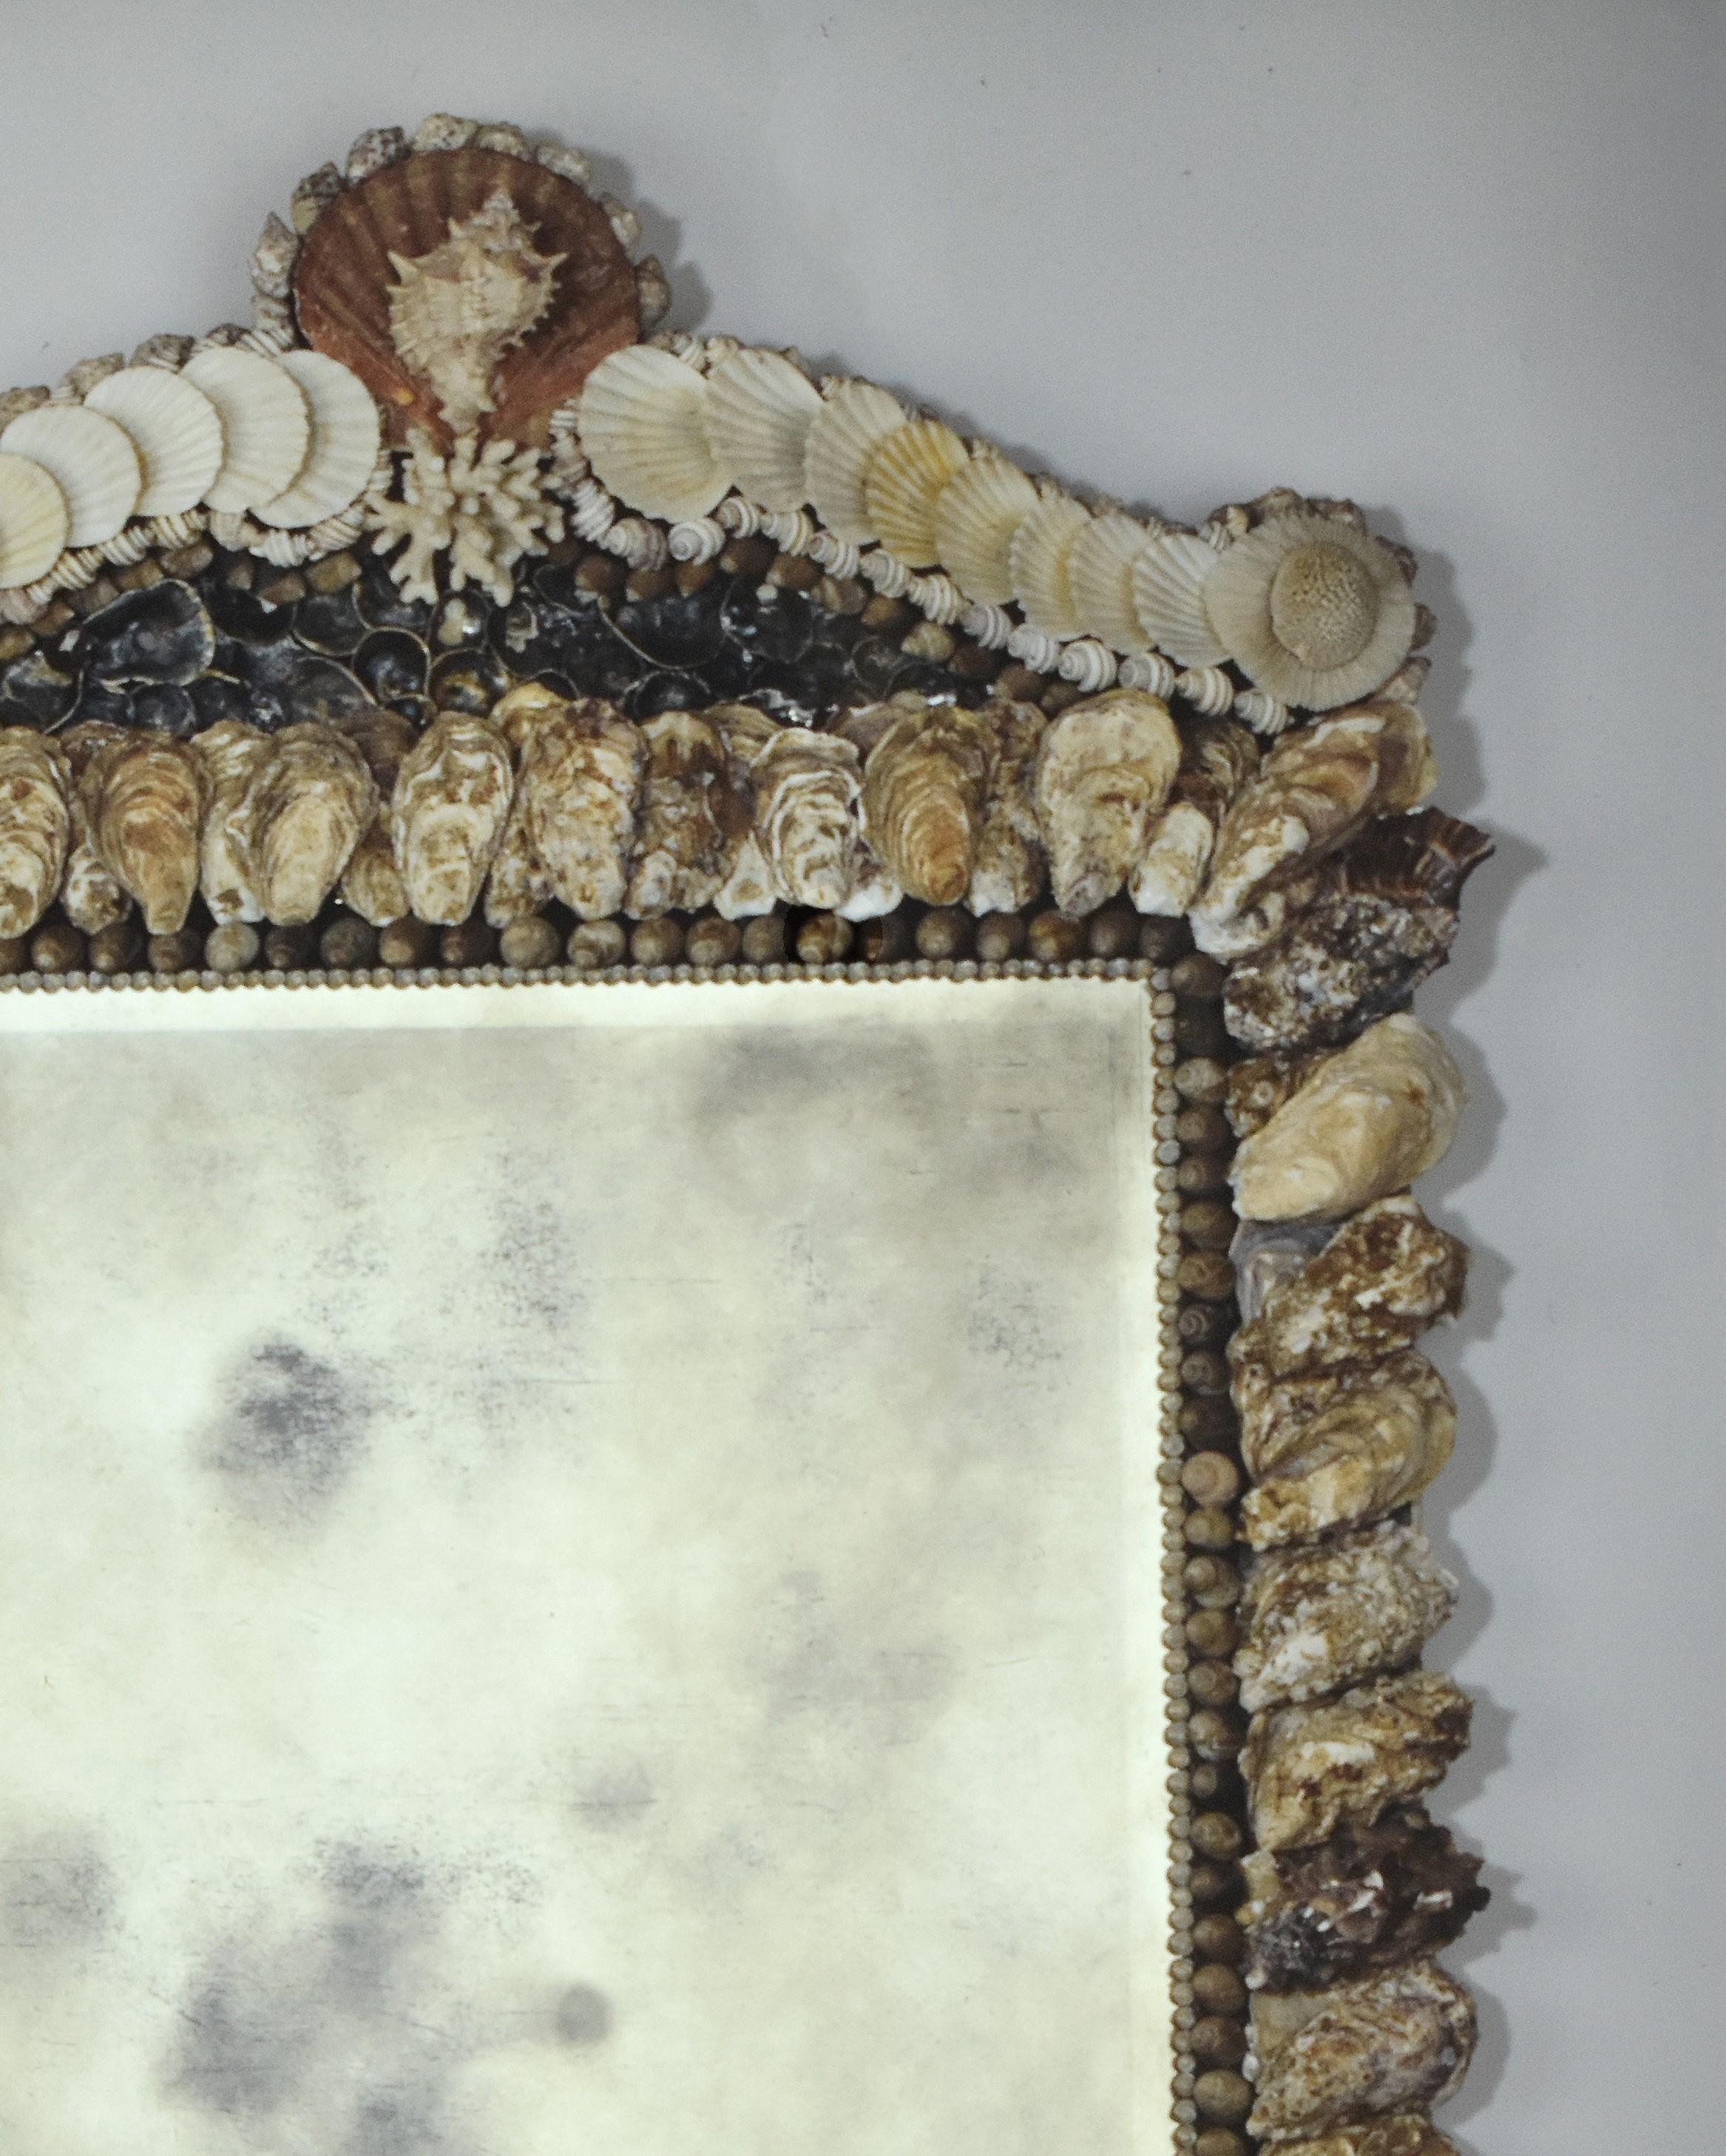 Ein feiner rechteckiger Spiegel, der mit einheimischen Knick- und Austernschalen verziert ist. Der Giebel mit Muschelknauf wird von einer einzelnen Murex-Muschel überragt und von unterbrochenen Spiralen aus weißen Fächer- und Perlmutt-Troca-Muscheln